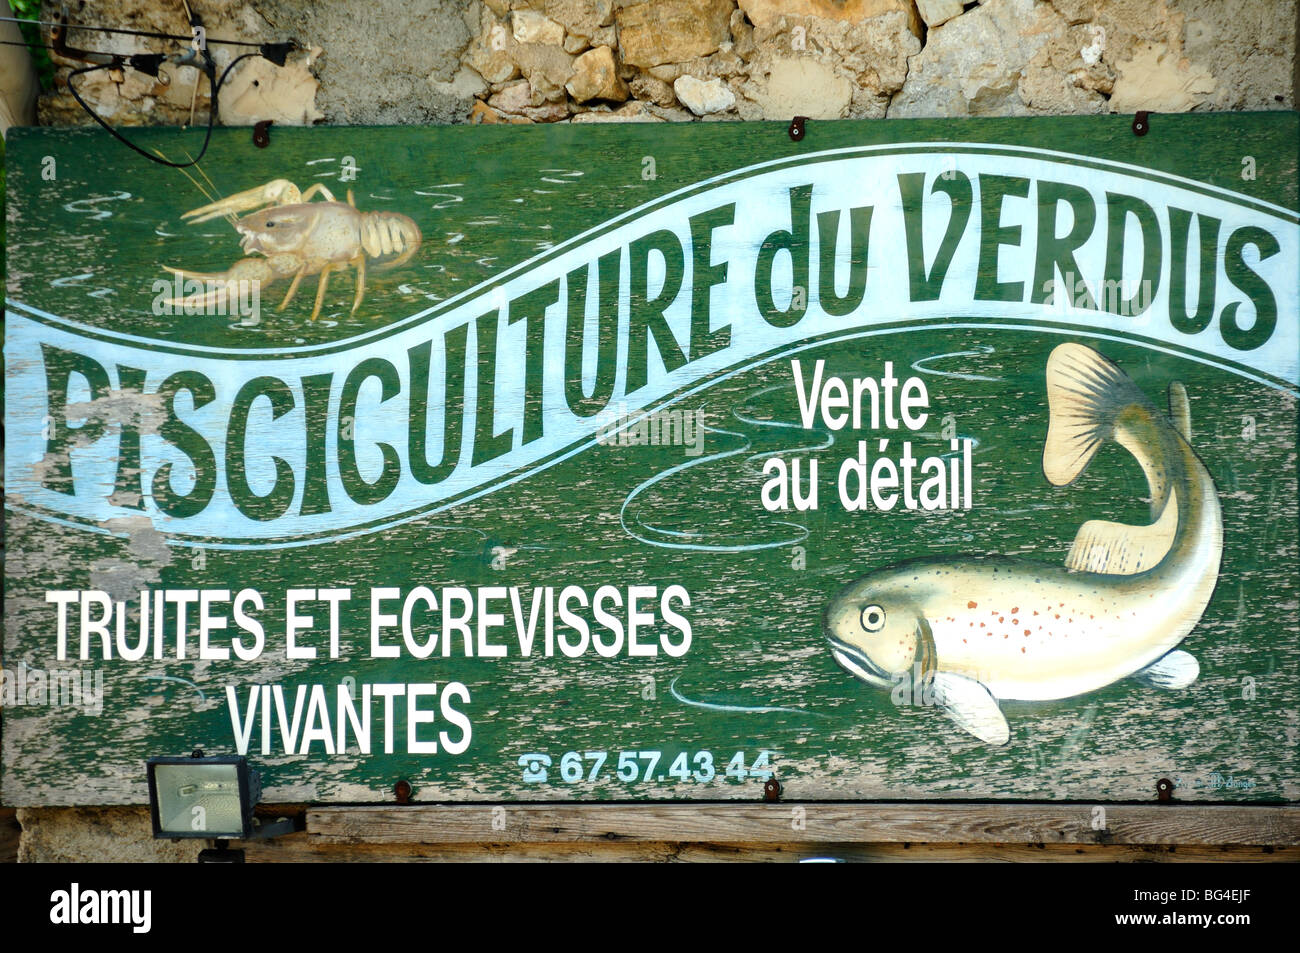 Ancienne enseigne peinte Publicité Aquaculture ou « pisciculture » pour la truite et l'écrevisse sur la rivière Verdus, Saint Guilhem le désert, Hérault, France Banque D'Images